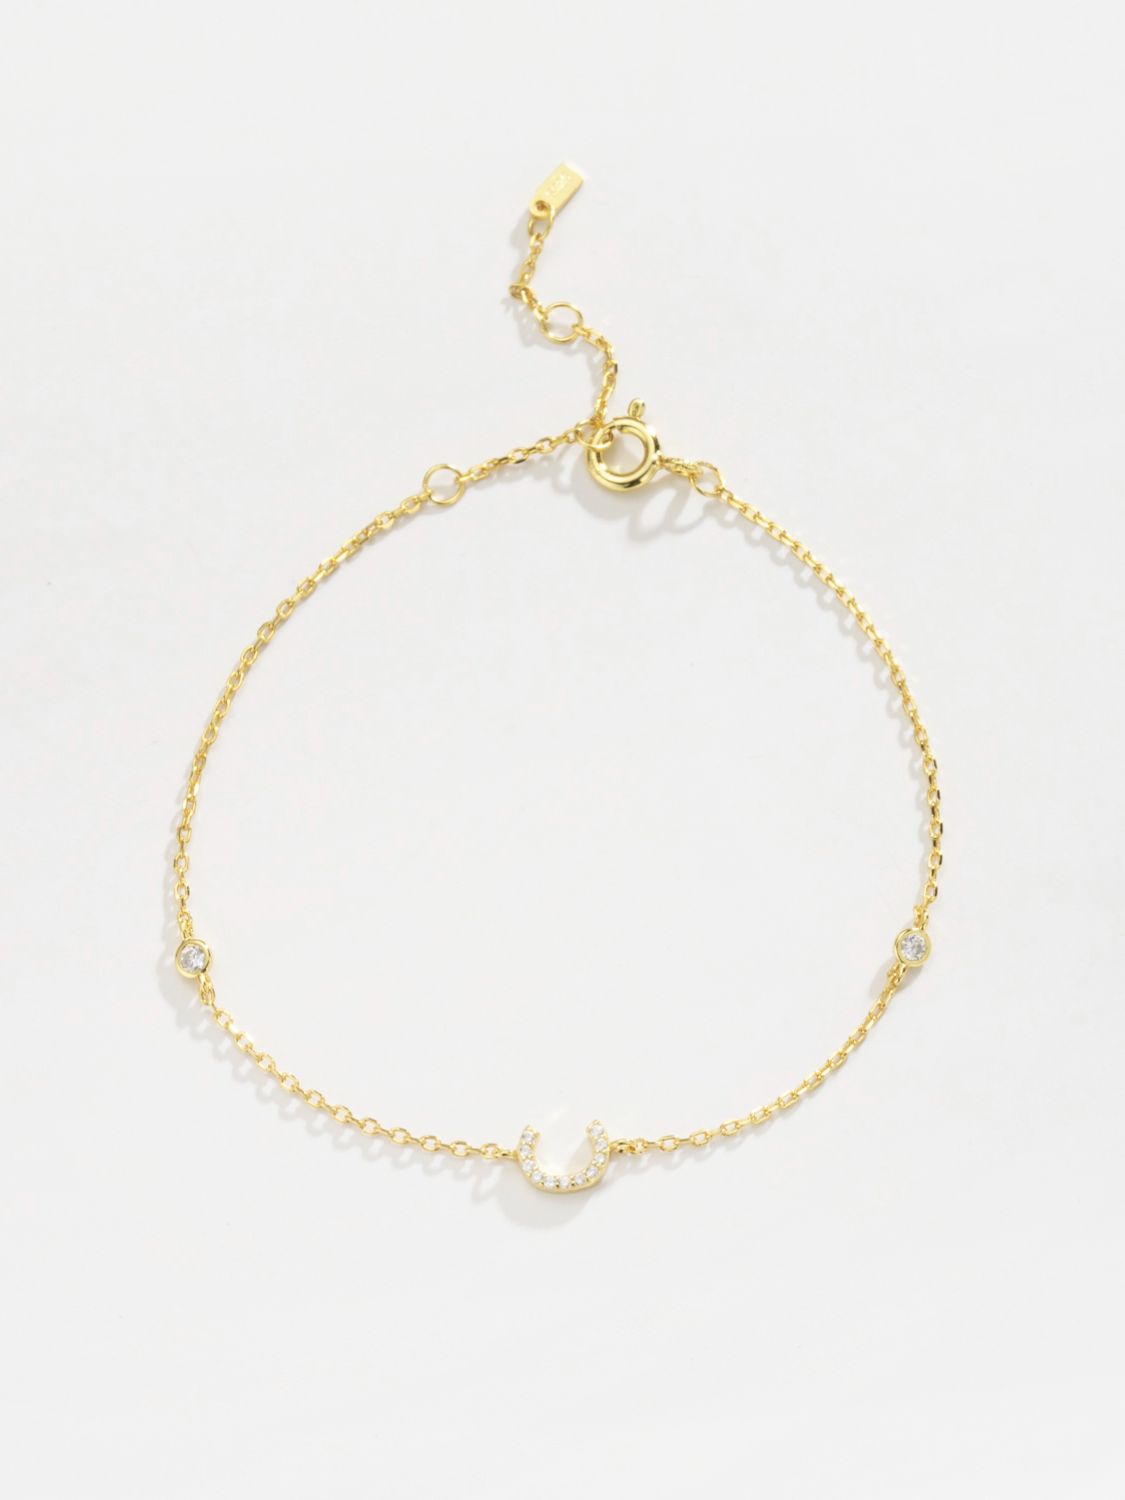 A To F Zircon 925 Sterling Silver Bracelet - Women’s Jewelry - Bracelets - 14 - 2024